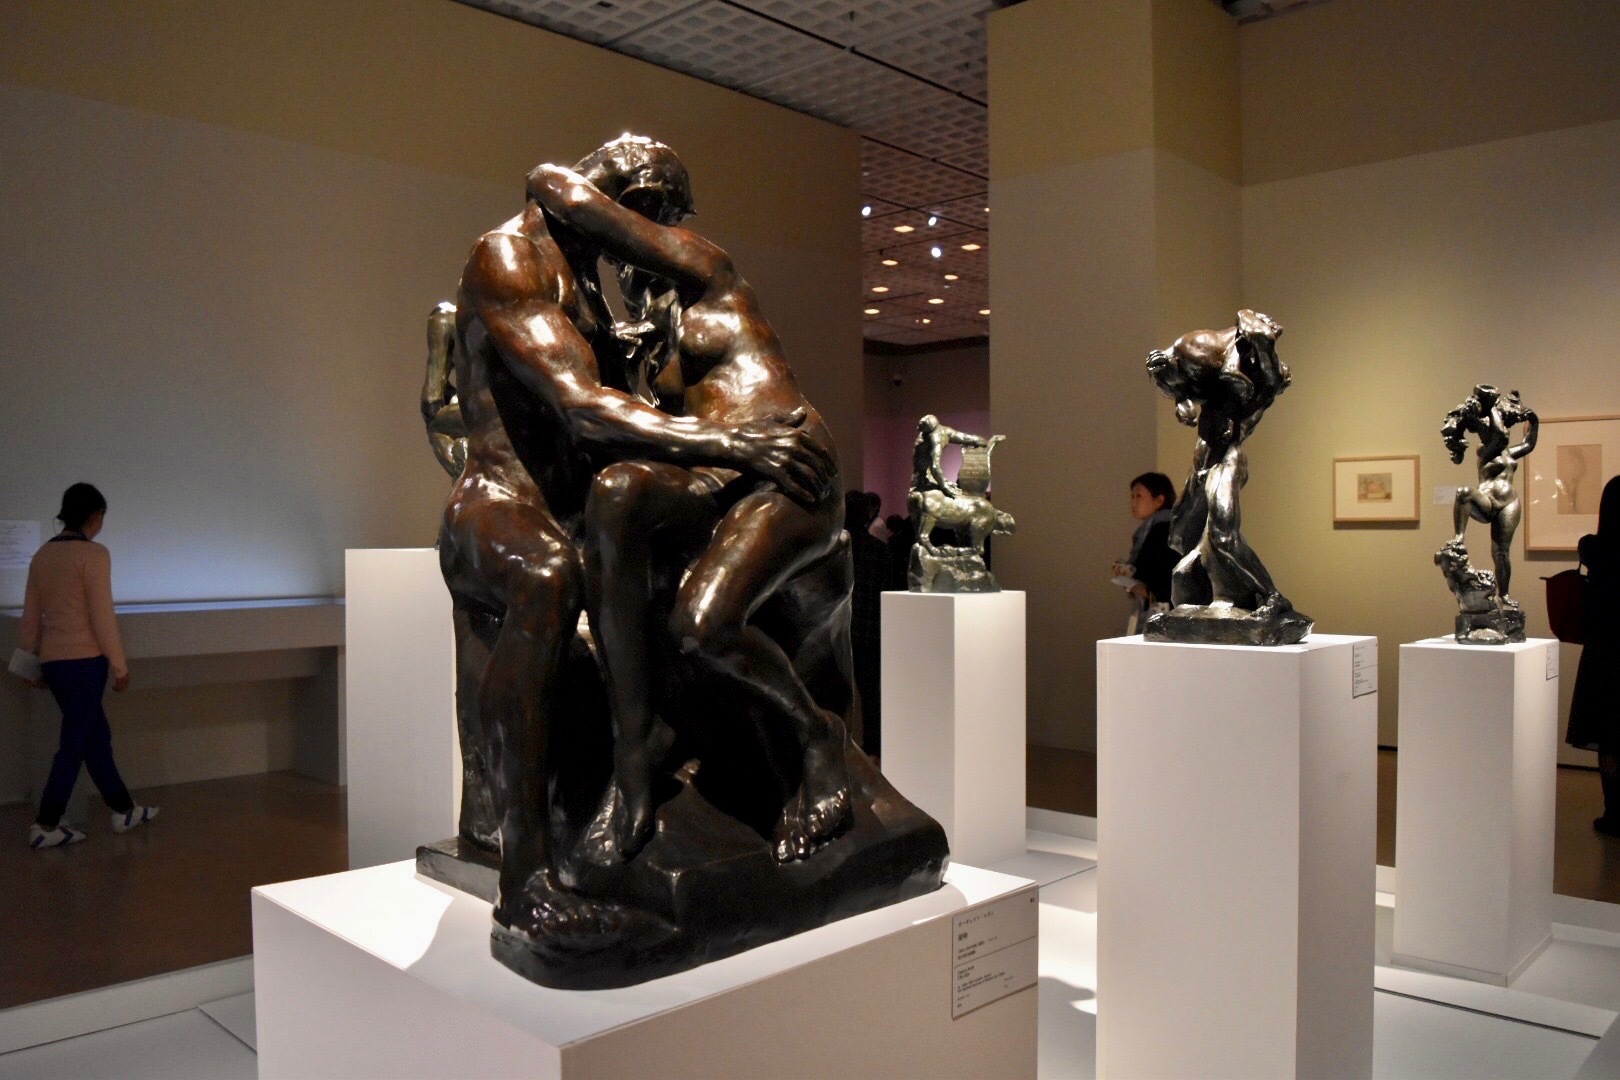 中央：オーギュスト・ロダン　《接吻》　1882-1887年頃（原型）　国立西洋美術館蔵